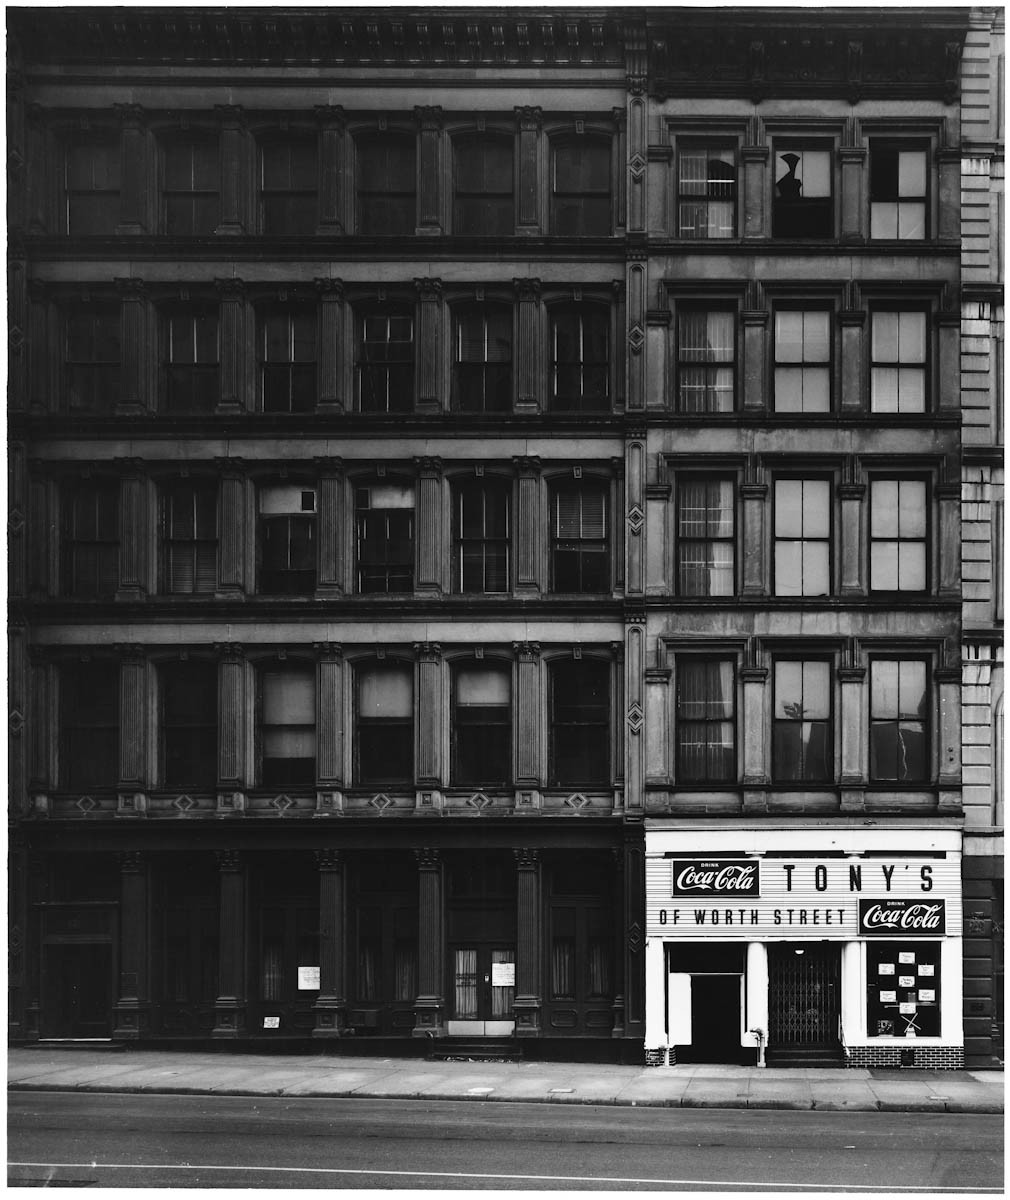 New York City, 1969 (Tony's)